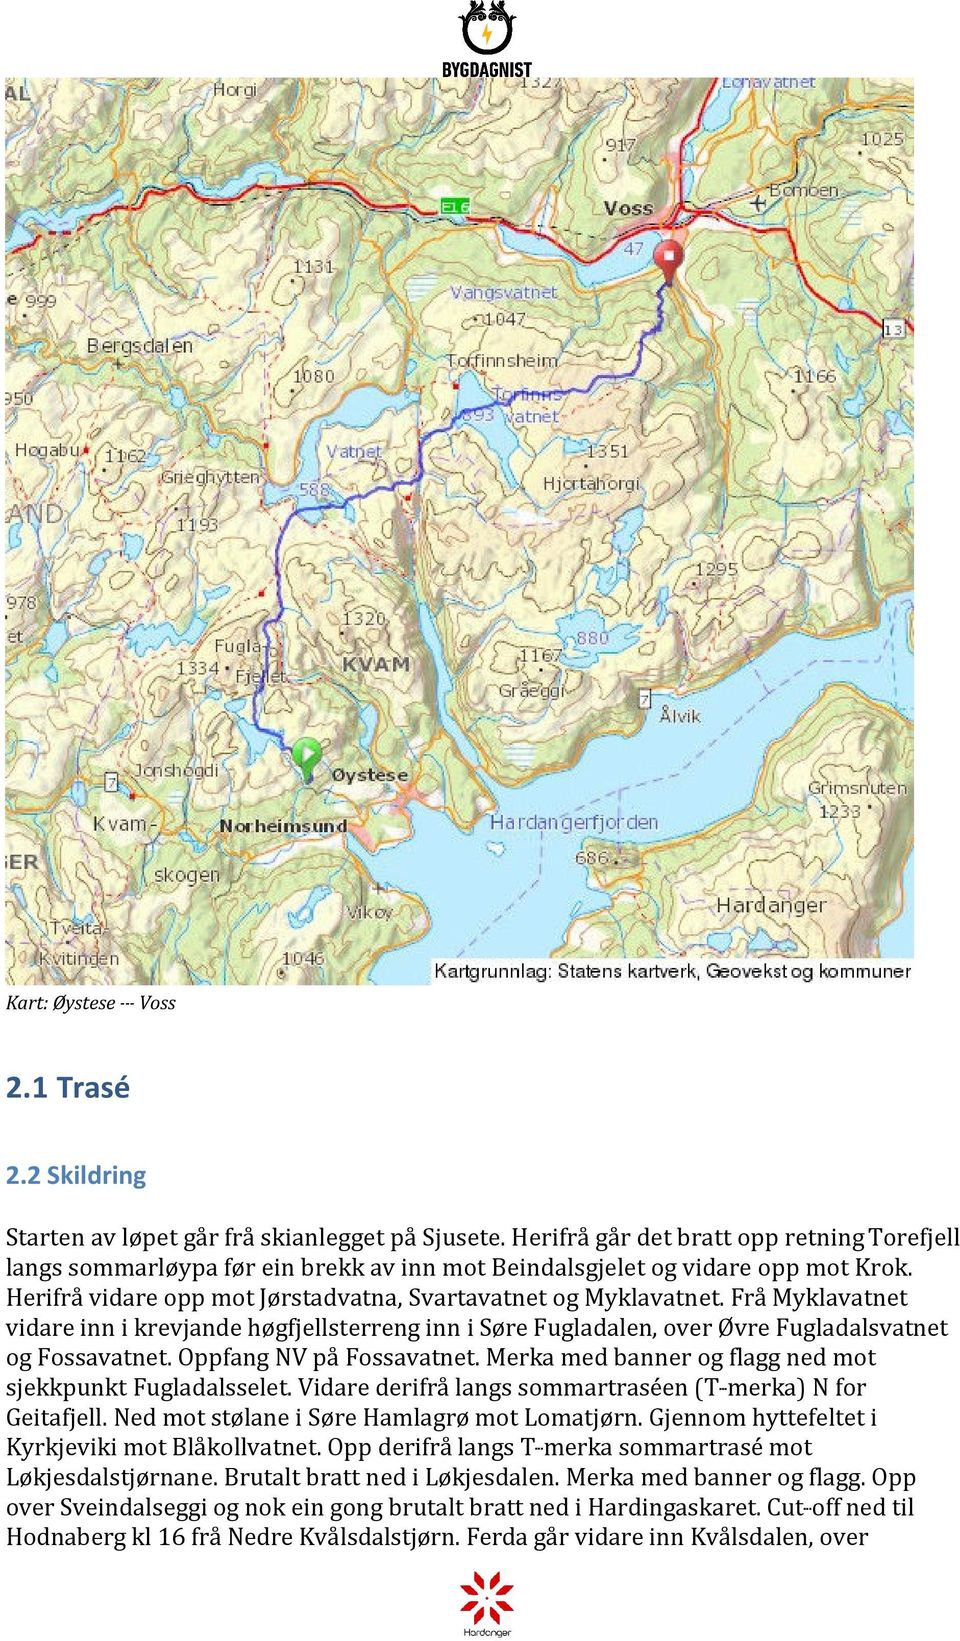 Frå Myklavatnet vidare inn i krevjande høgfjellsterreng inn i Søre Fugladalen, over Øvre Fugladalsvatnet og Fossavatnet. Oppfang NV på Fossavatnet.